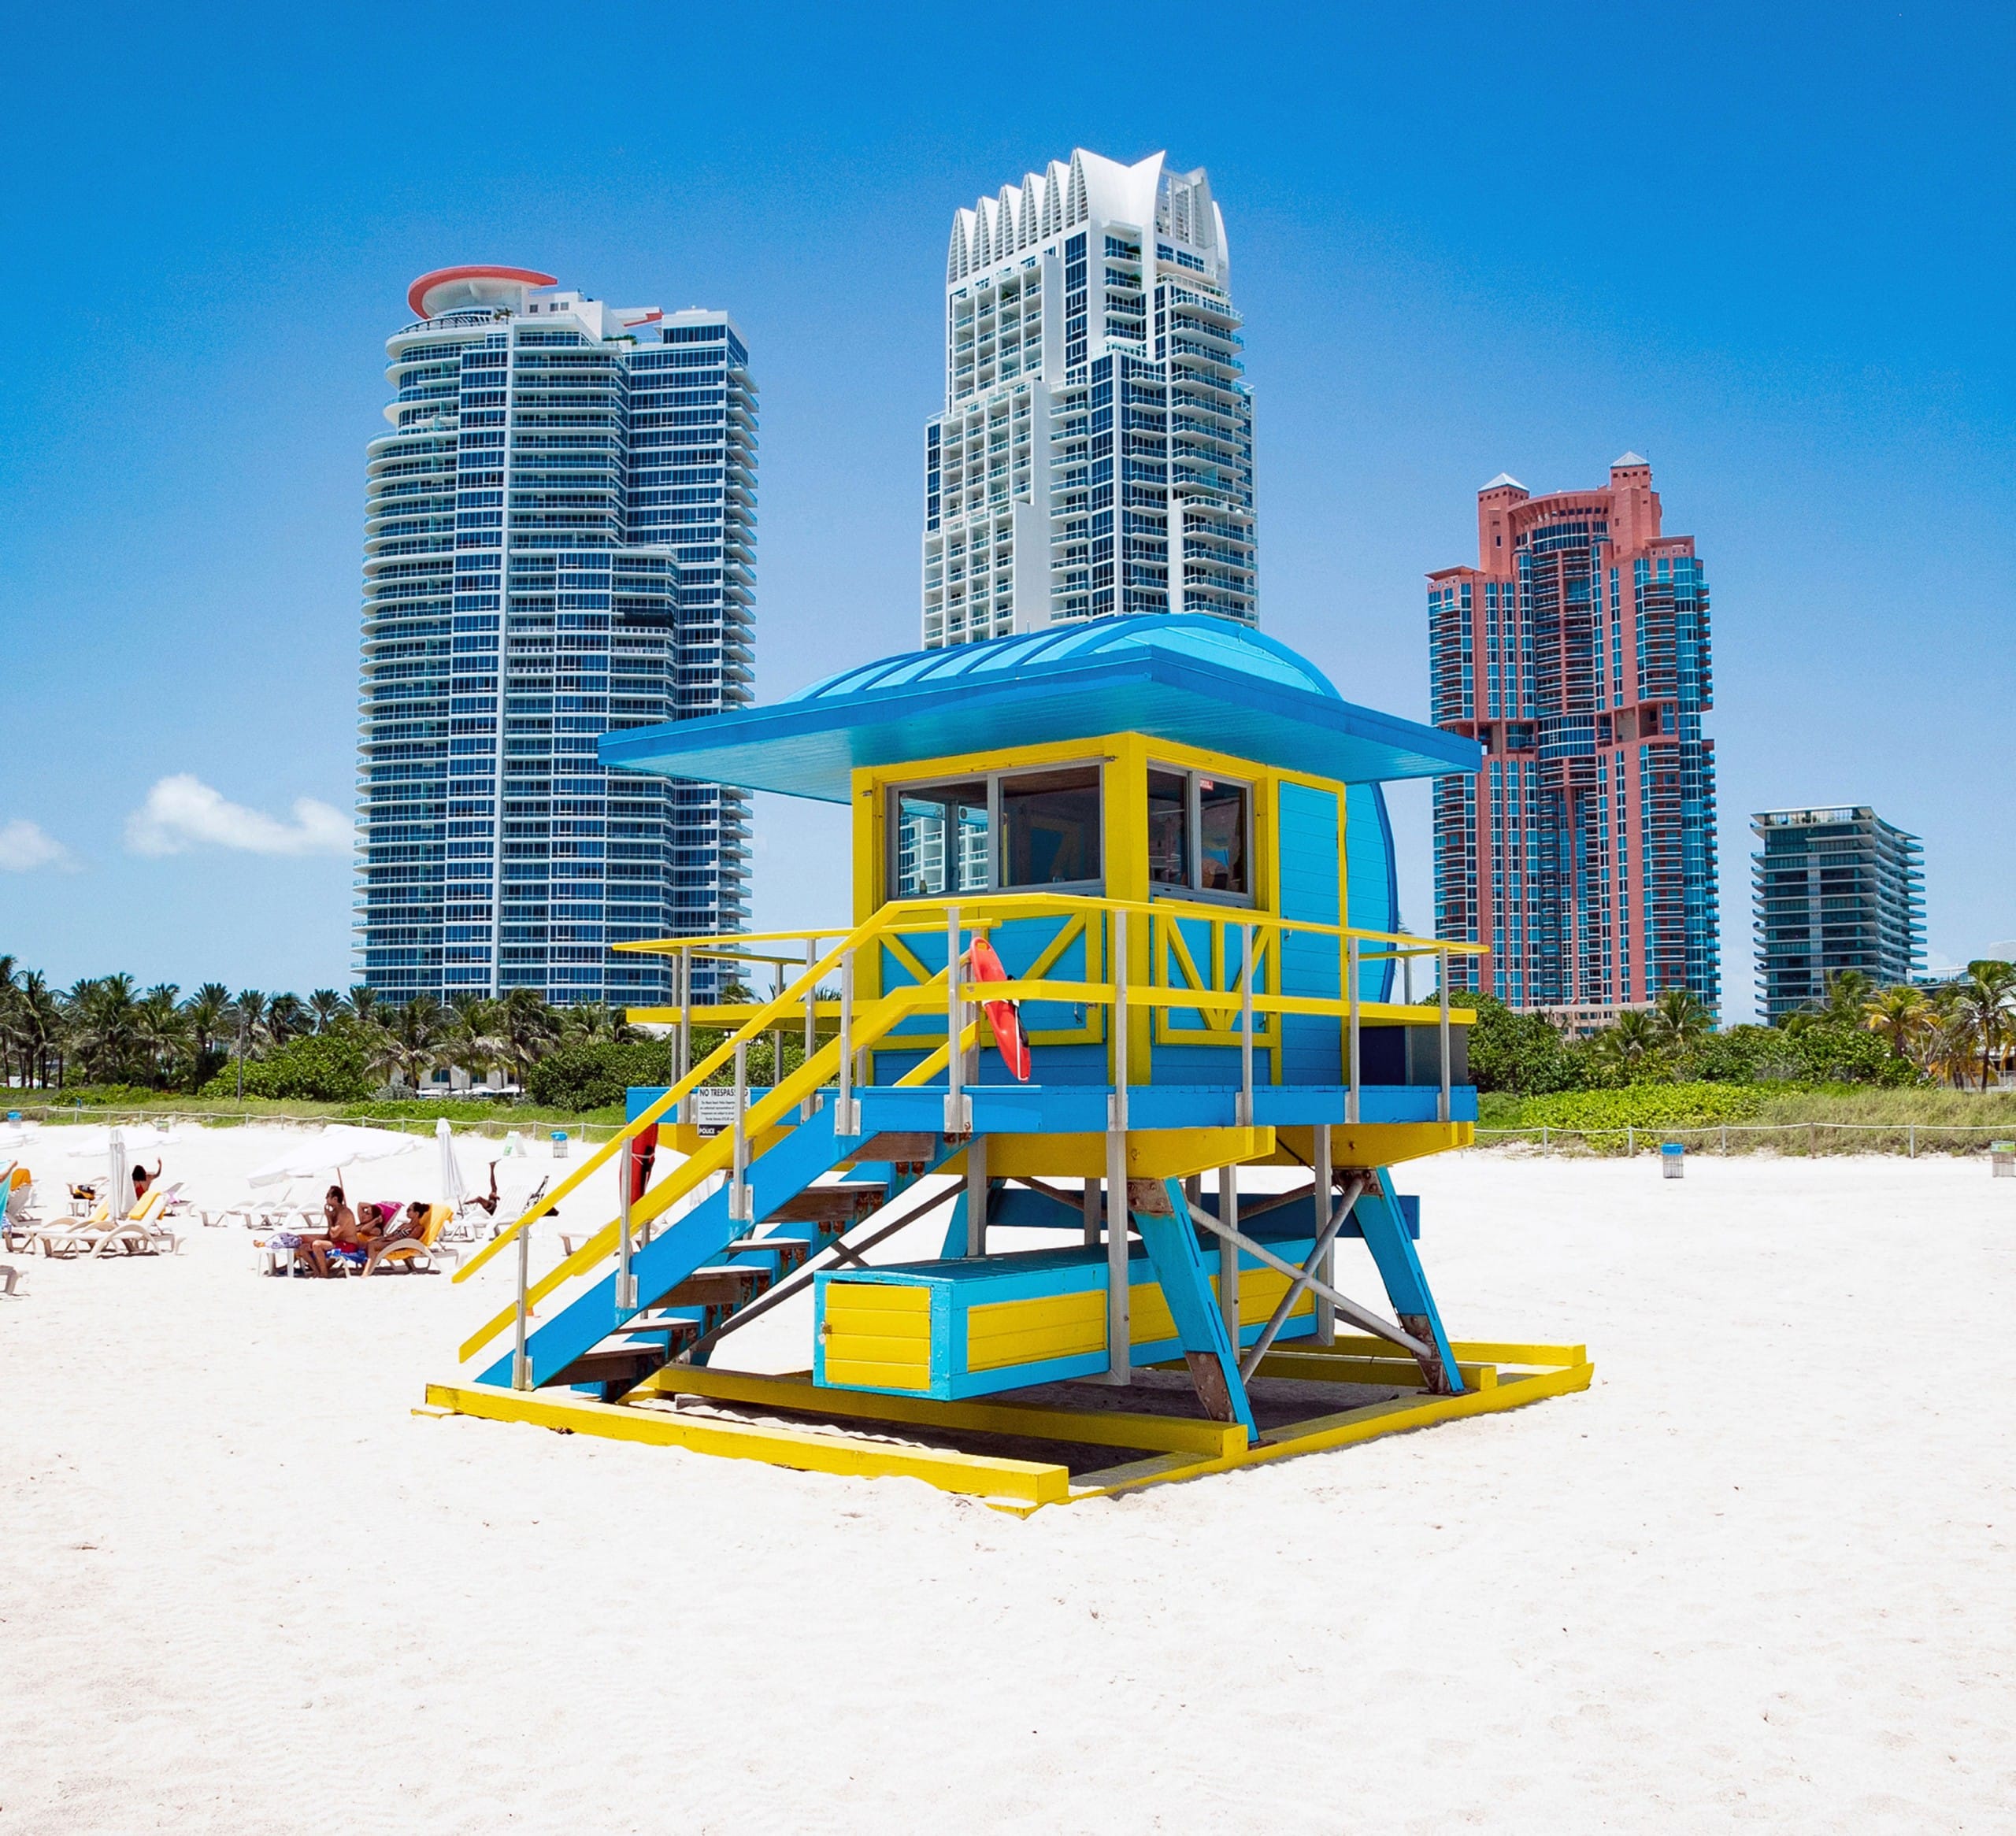 Ein hölzernes Strandwächterhäuschen in Blautönen und Gelb vor einer Skyline mit drei Hochhäusern. Miami Beach, Lifeguard Tower, William Lane, Foto: Archiv Architekten